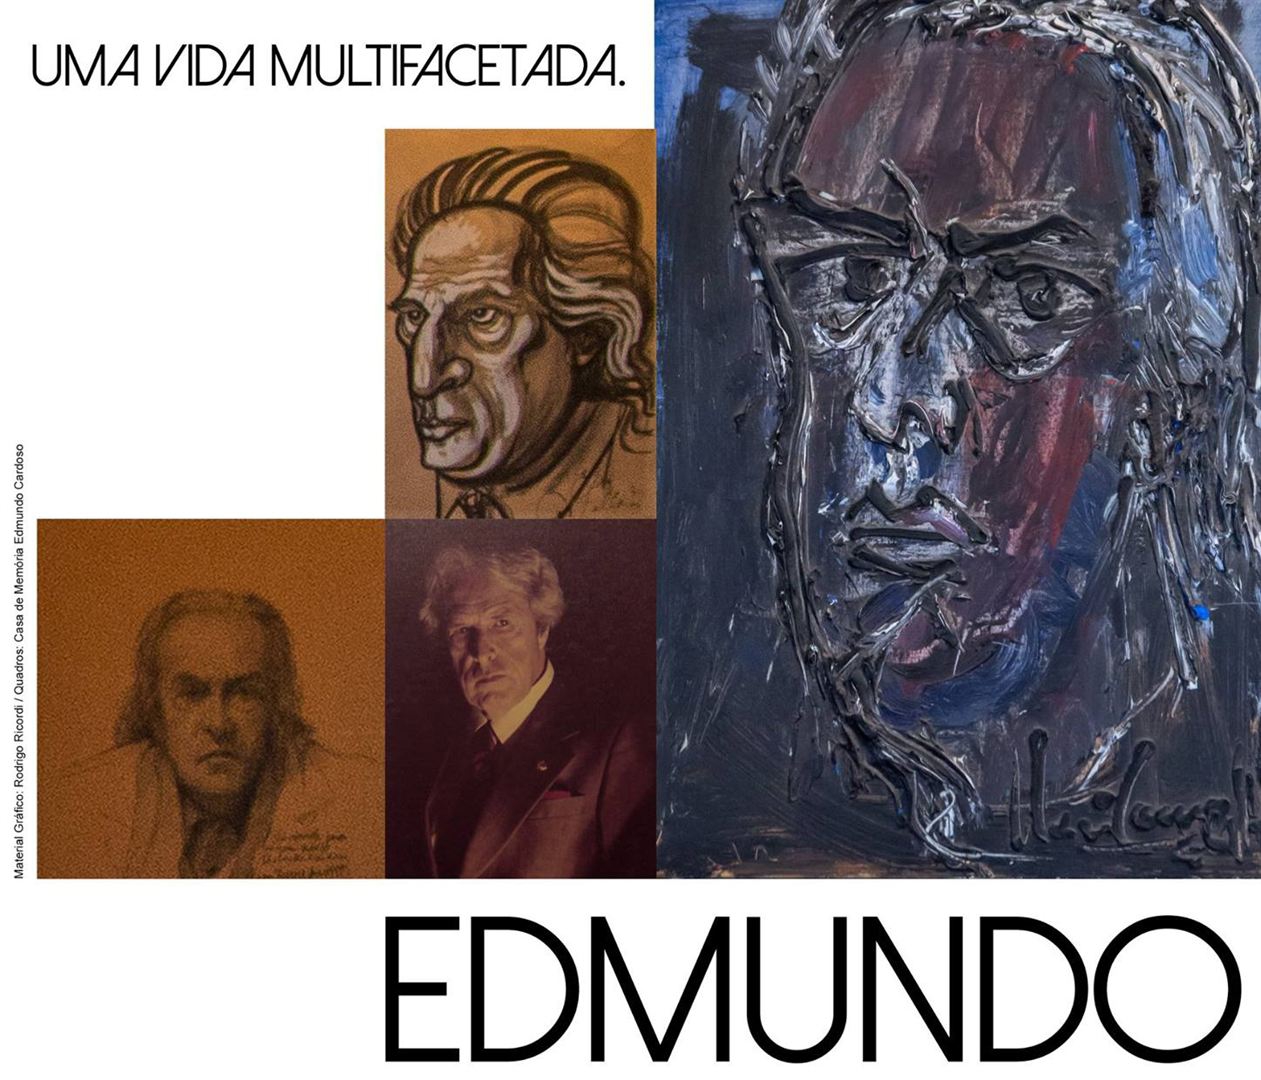  Edmundo (2015) Poster 